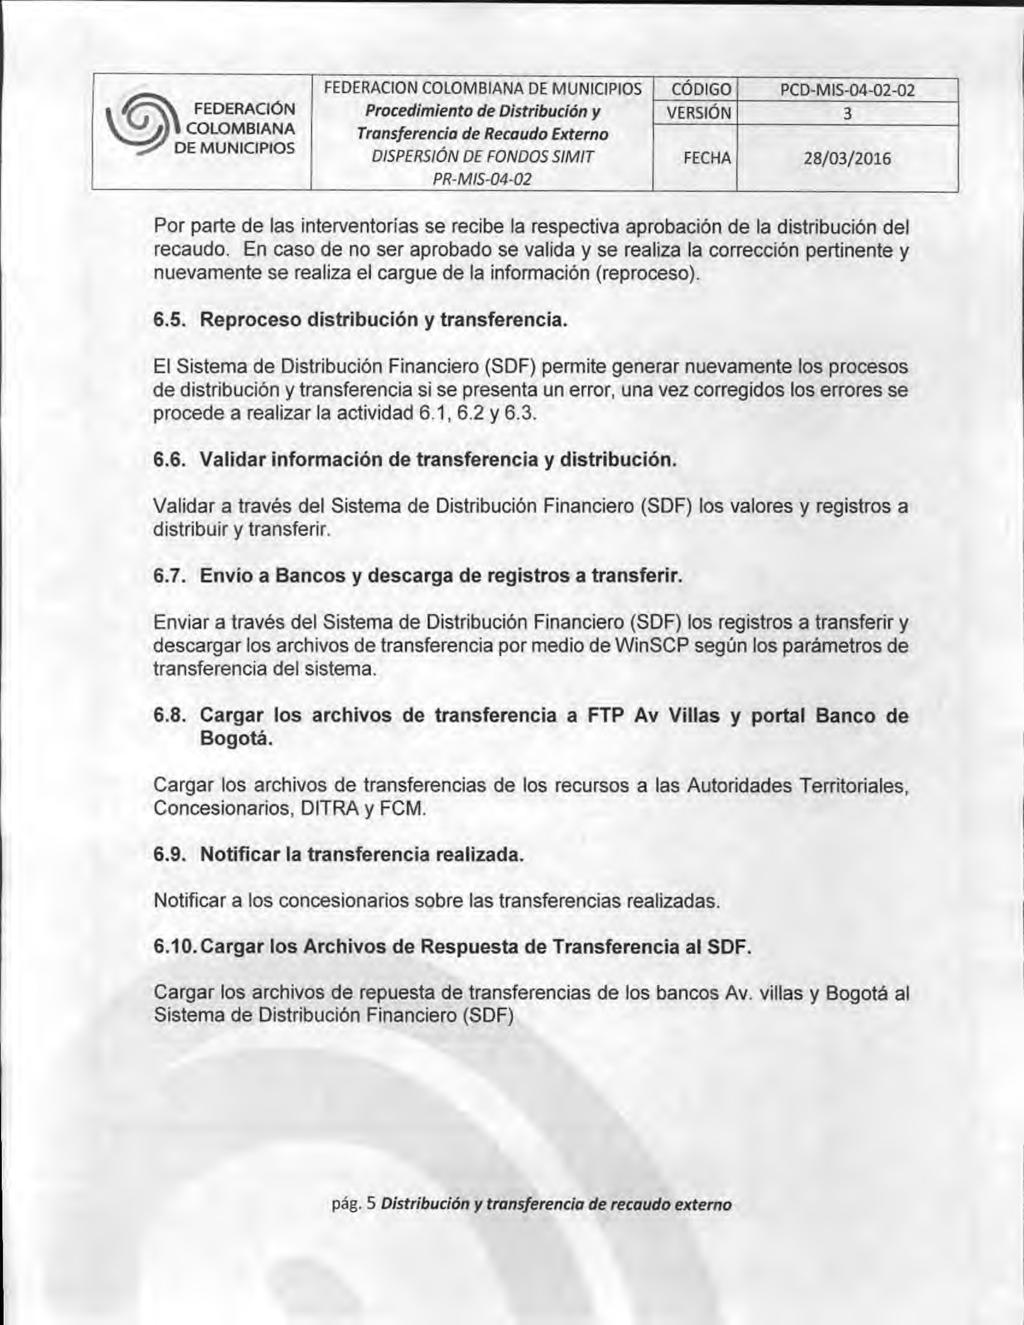 1 FEDERAOON COLOMBIANA CÓDIGO PCD-MI1-04-02-02 DISPERSIÓN DE FONDOS SIMIT FECHA 28/03/2016 Por parte de las interventorías se recibe la respectiva aprobación de la distribución del recaudo.